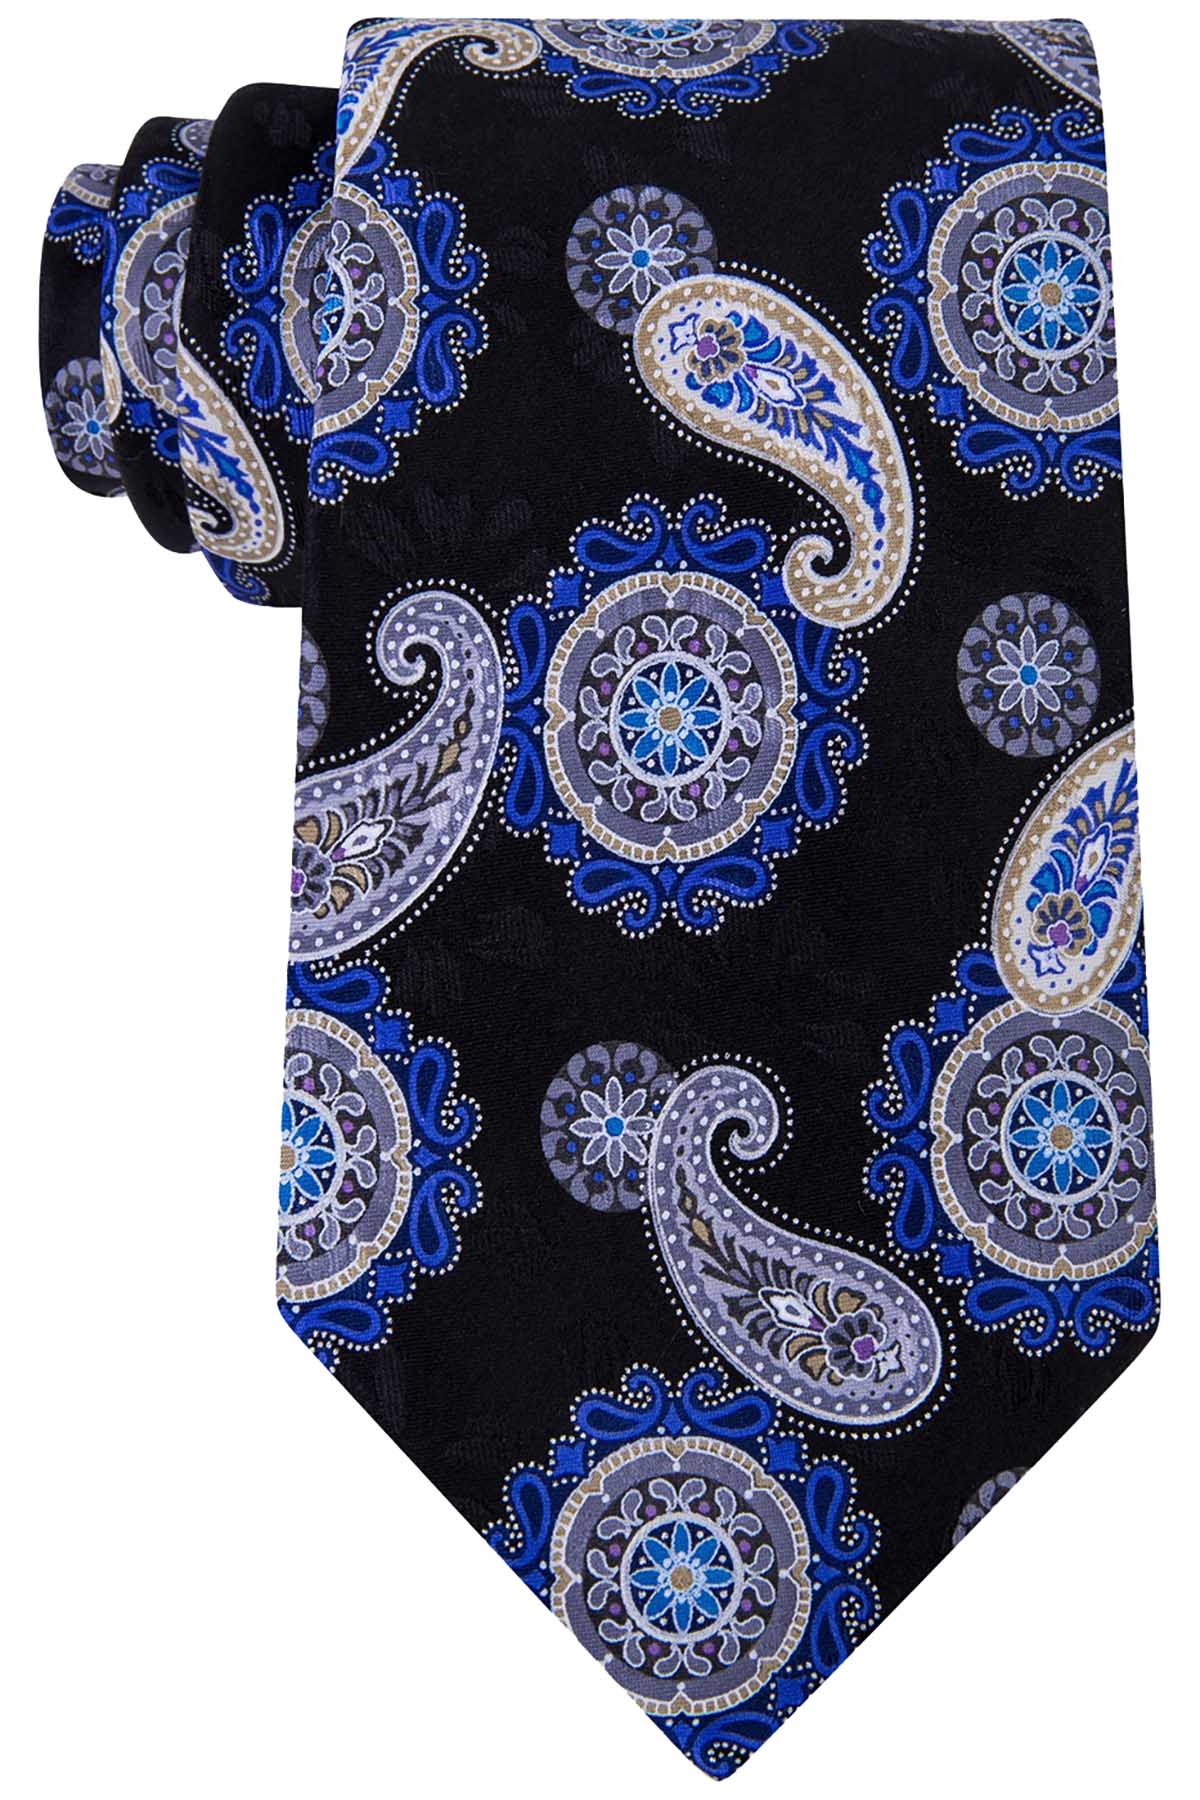 Geoffrey Beene Black/Blue Paisley Medallion Tie – CheapUndies